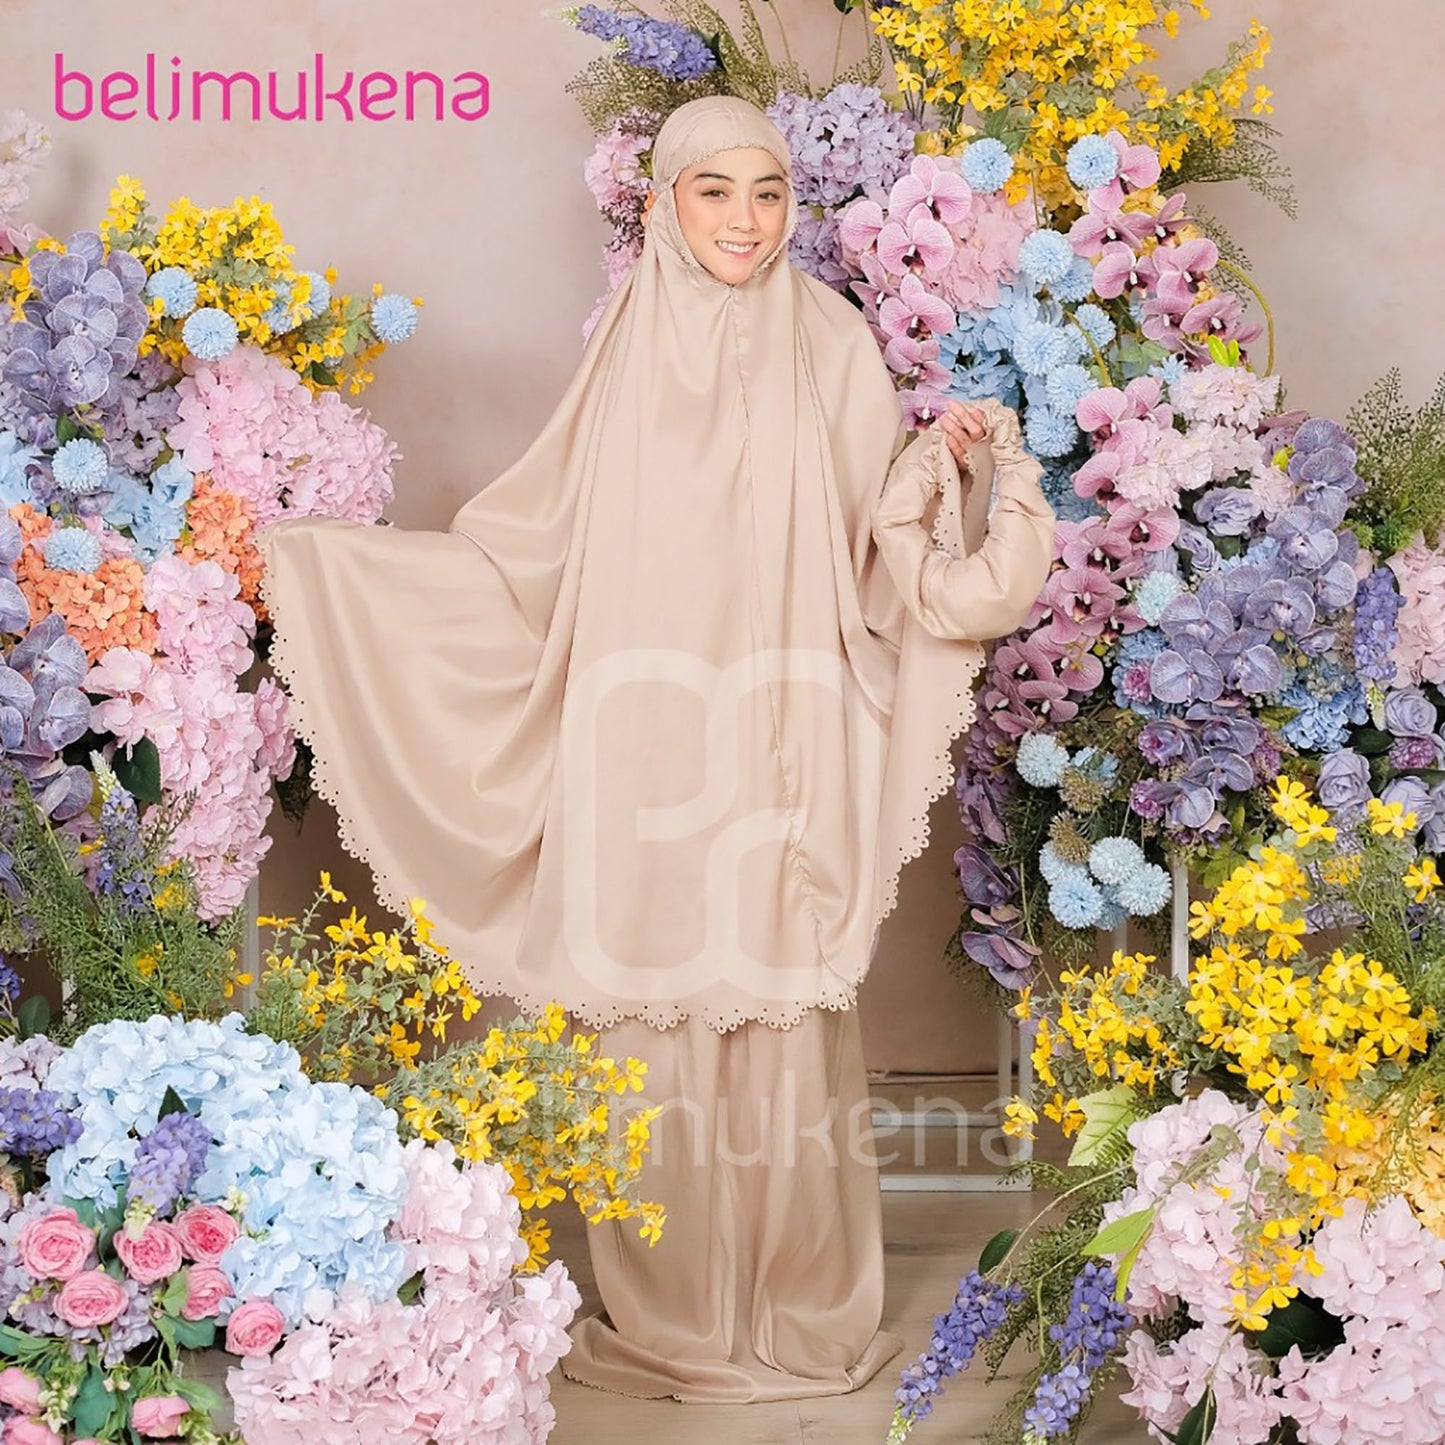 Tya Ariestya Mukena Travel Medium Laser Cut Muslim Prayer Dress